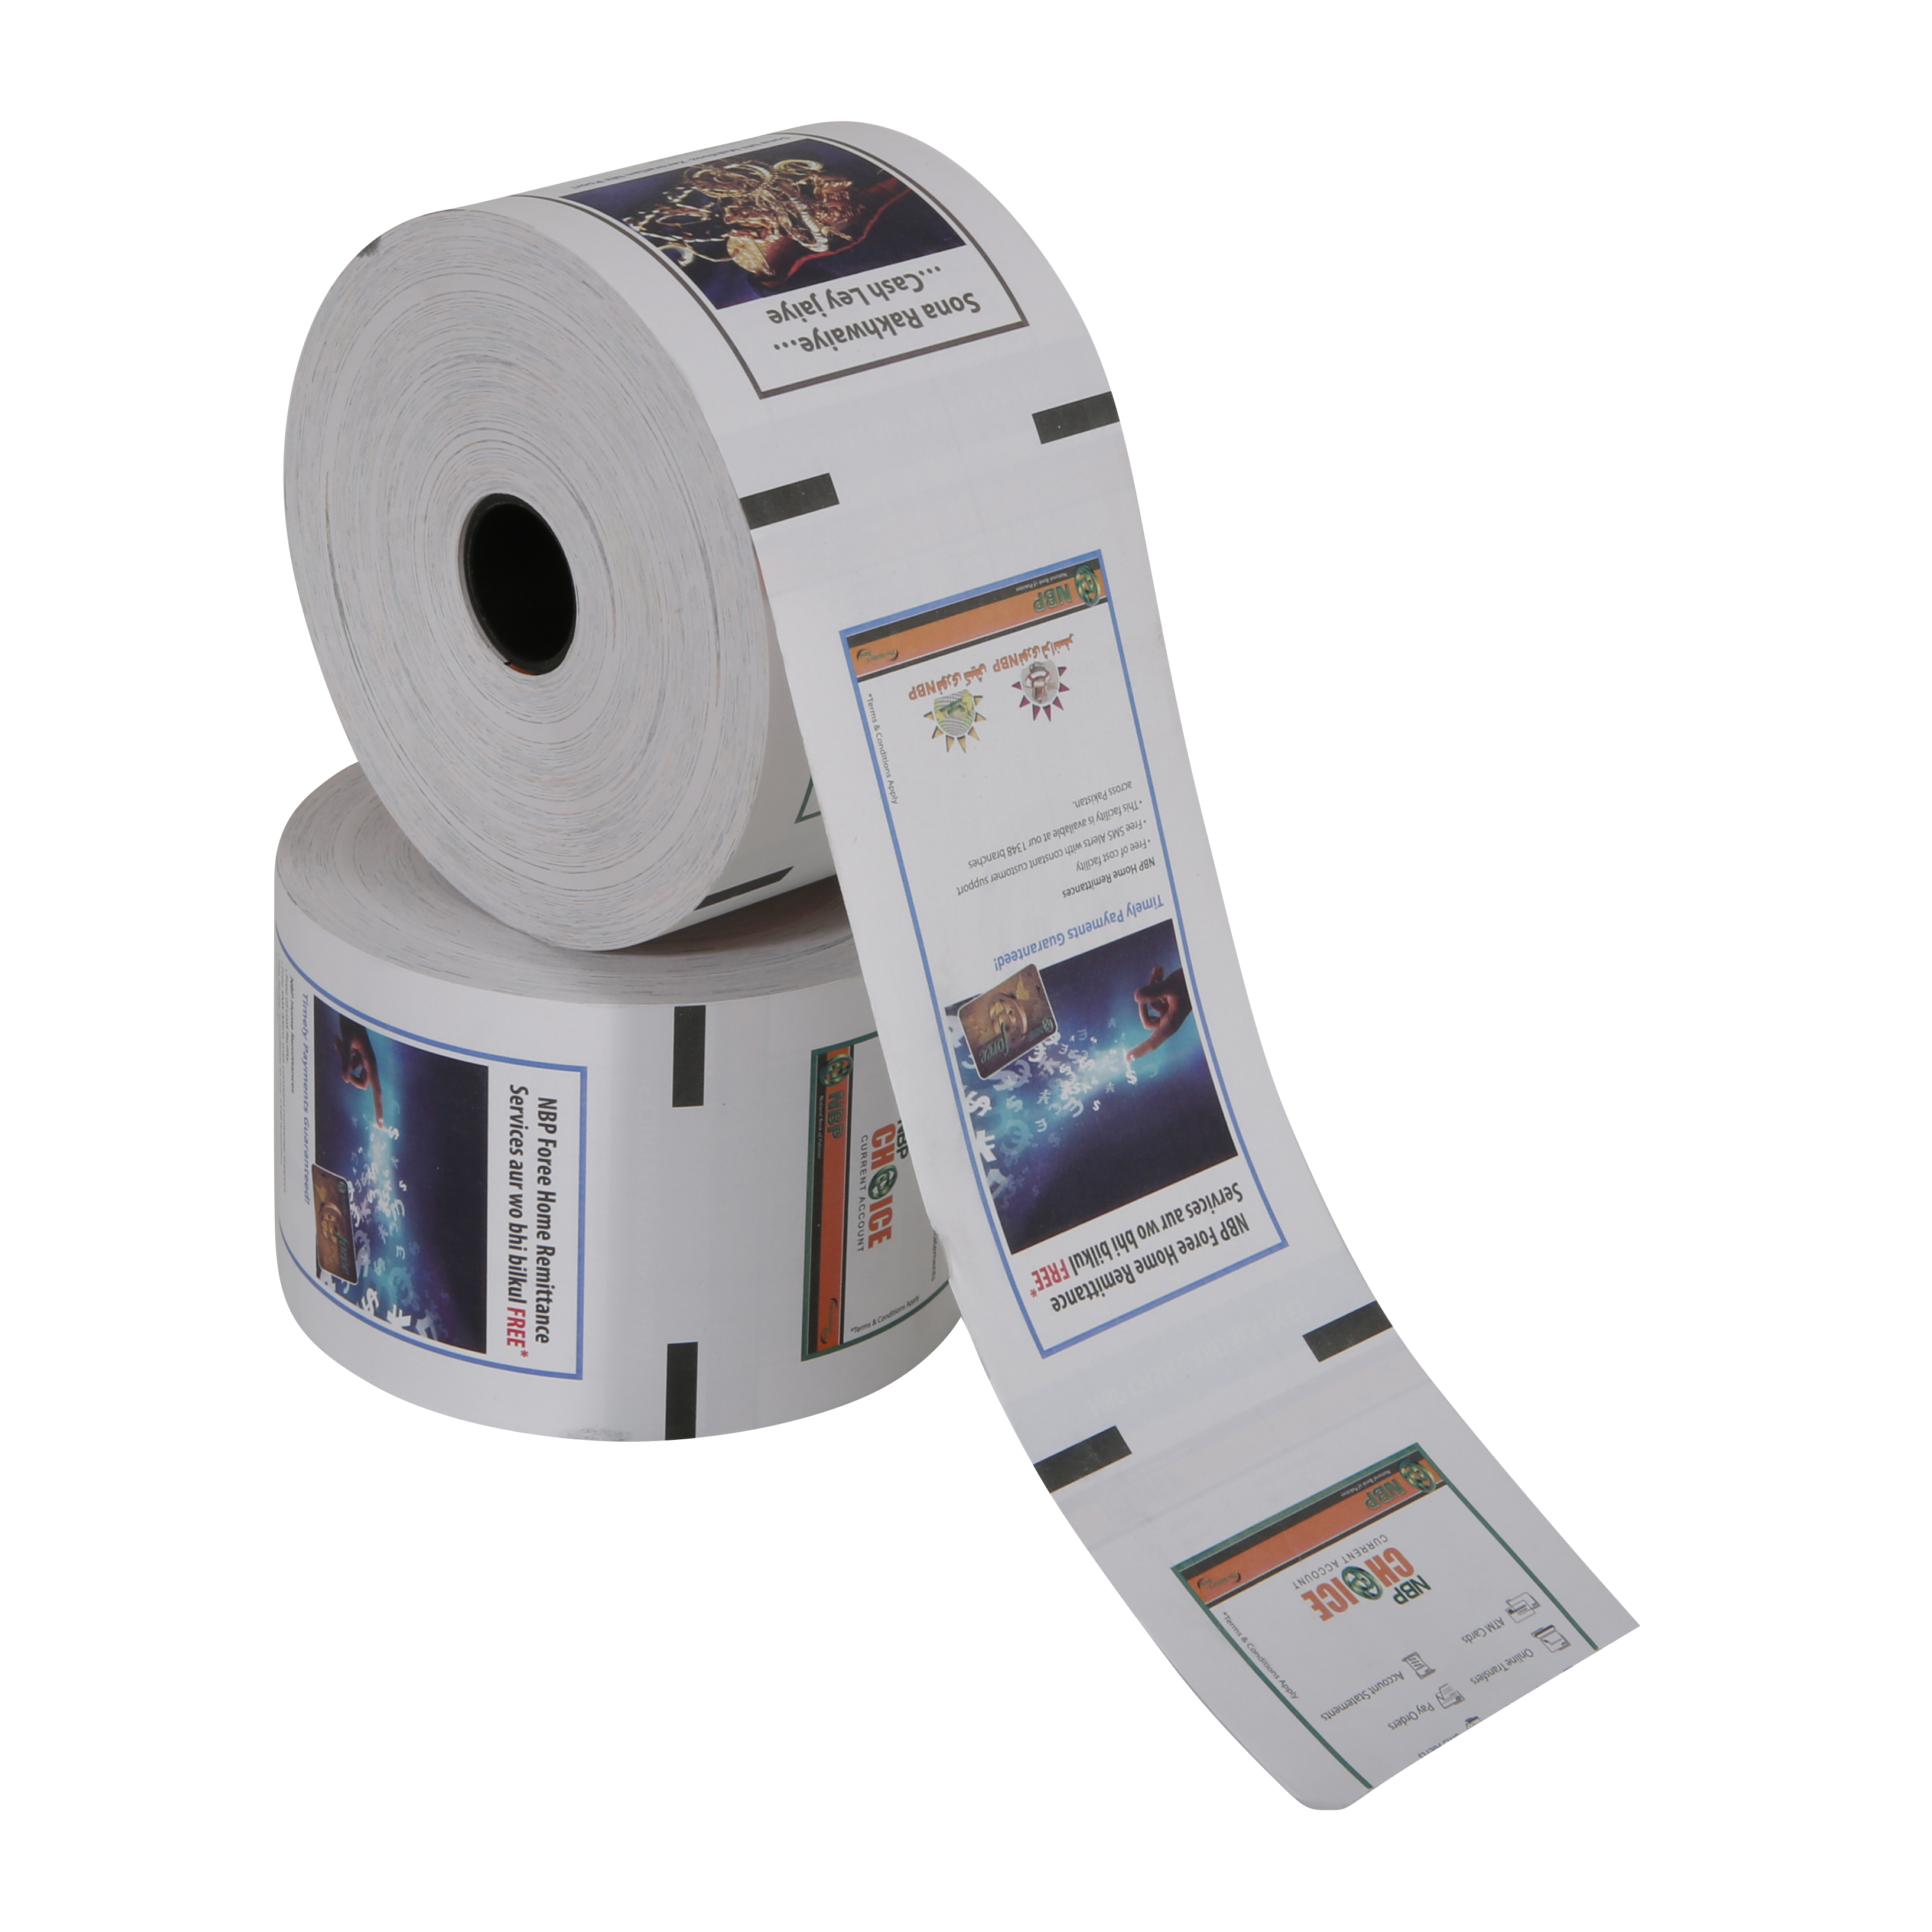 Tryckt 80 x 80 mm atm kvittorulle kassaregister termiskt papper